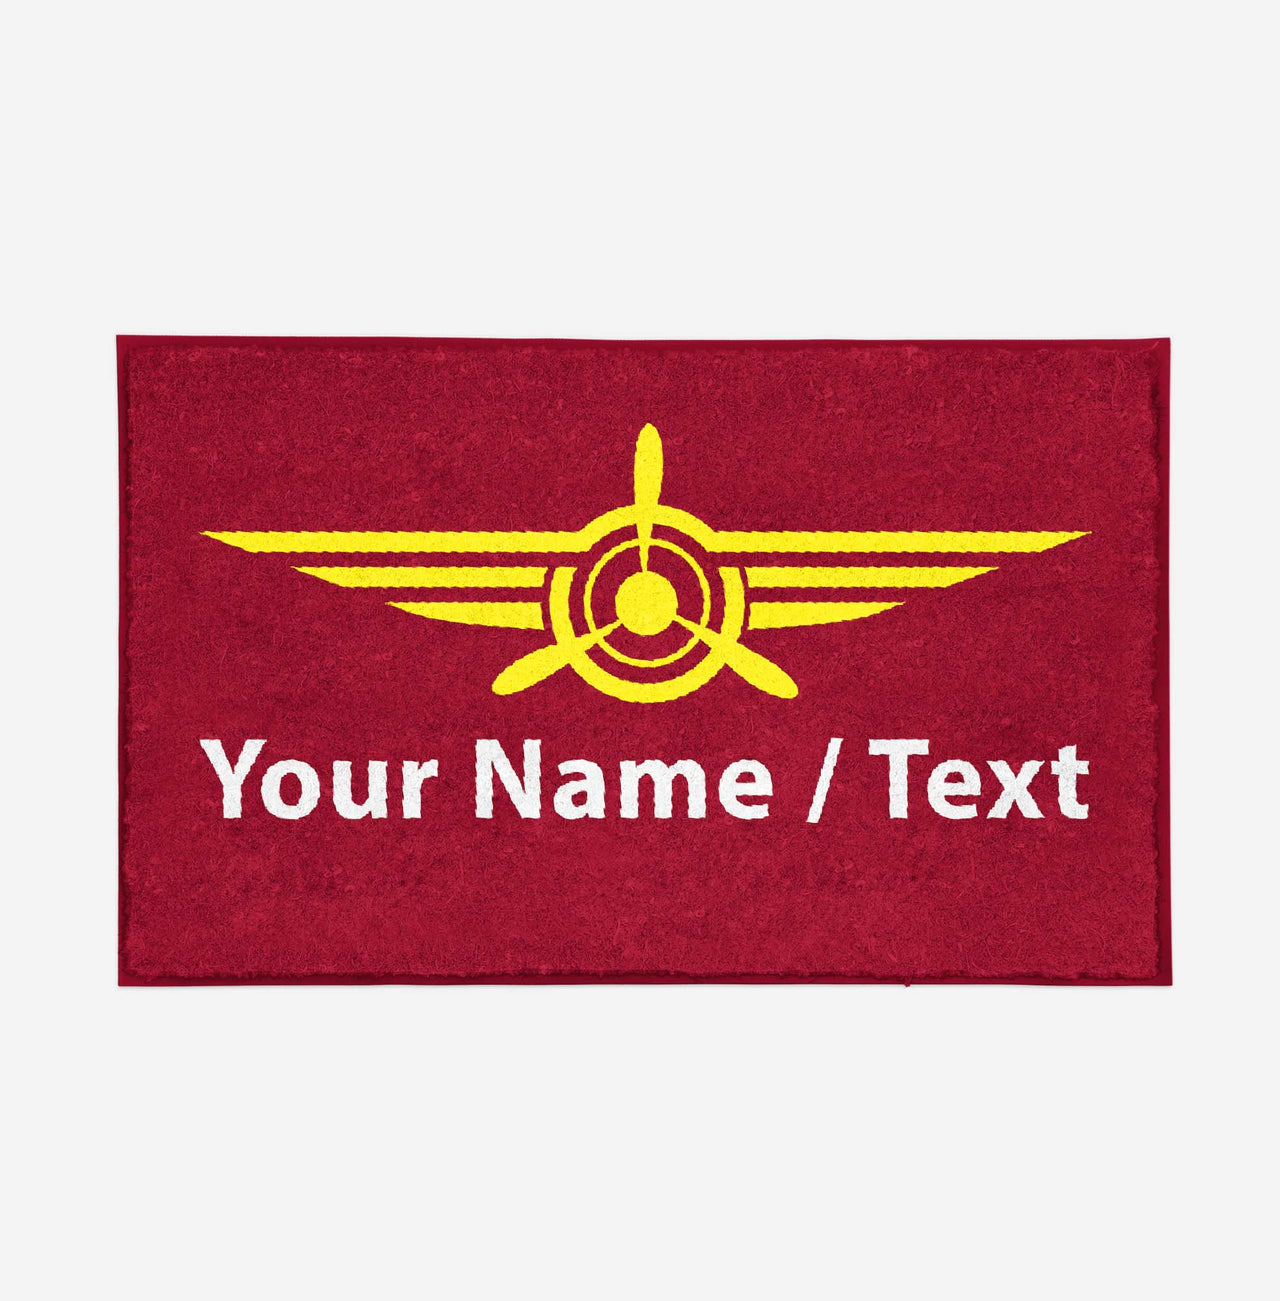 Customizable Name/Text & Badge (3) Designed Door Mats